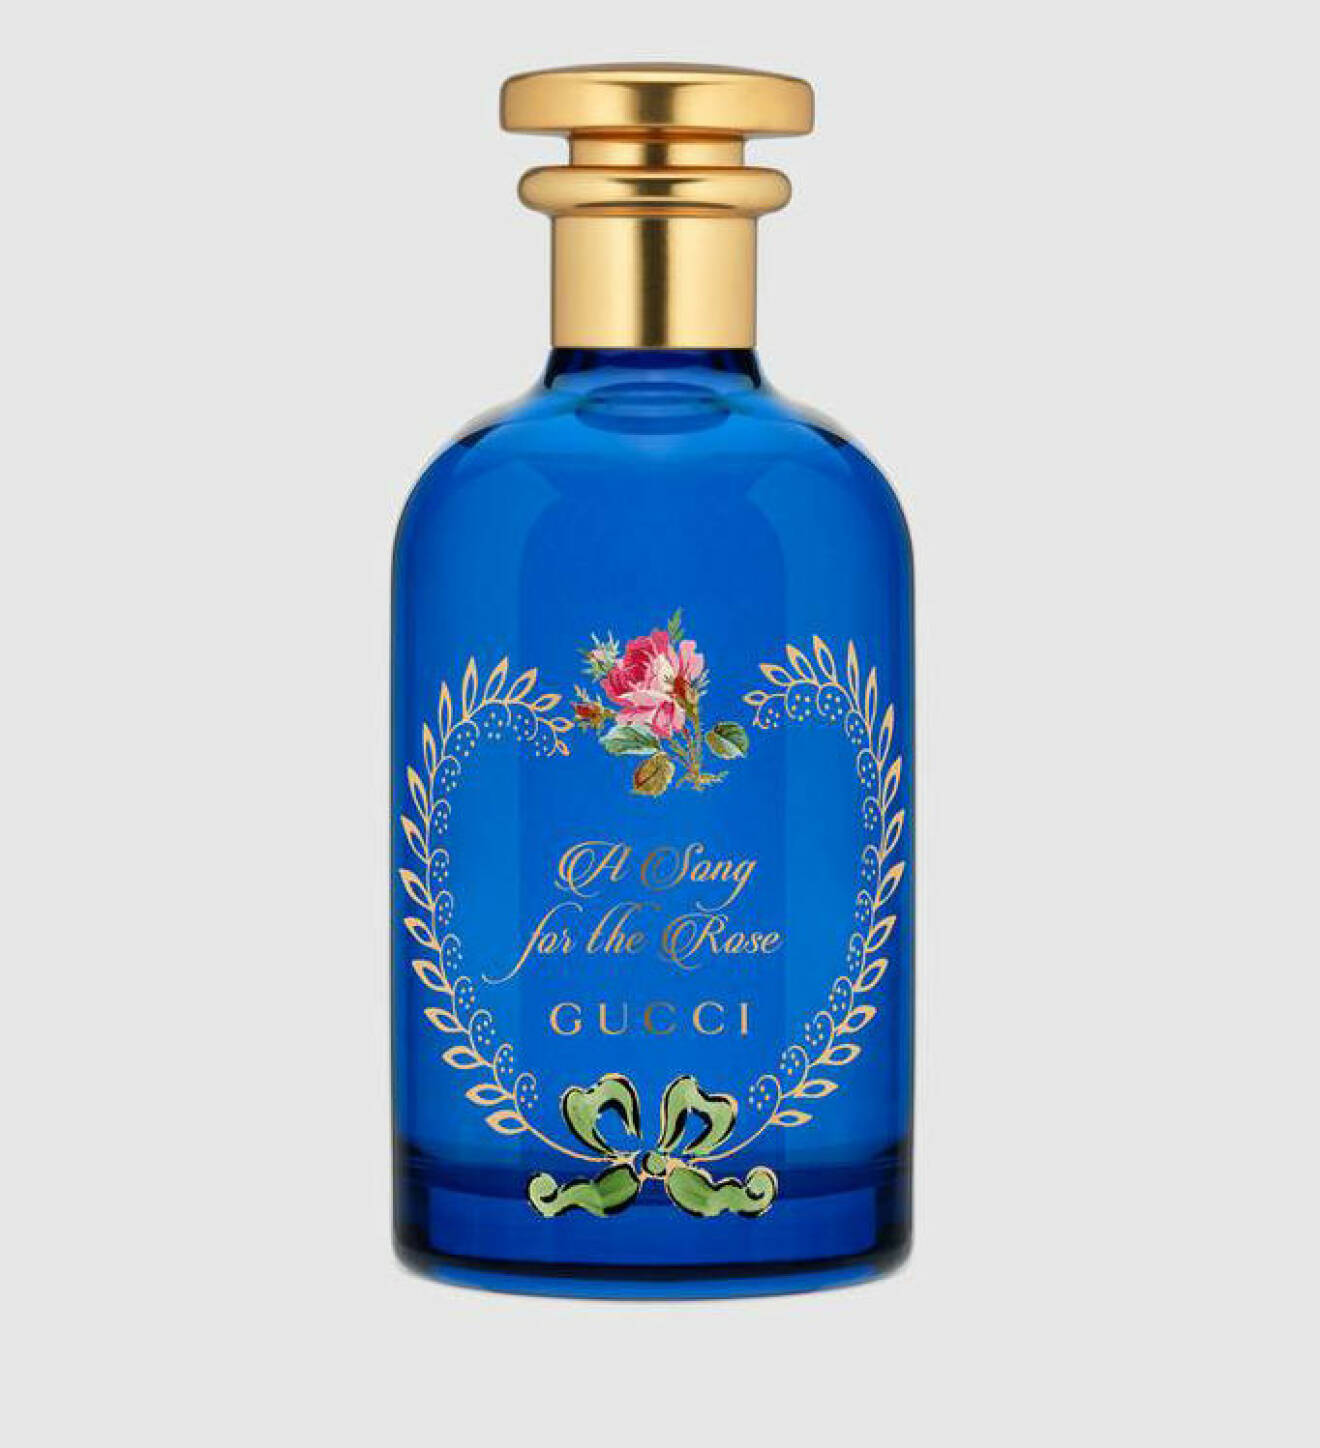 Parfym med doft av ros – Guccis The Alchemist's garden 